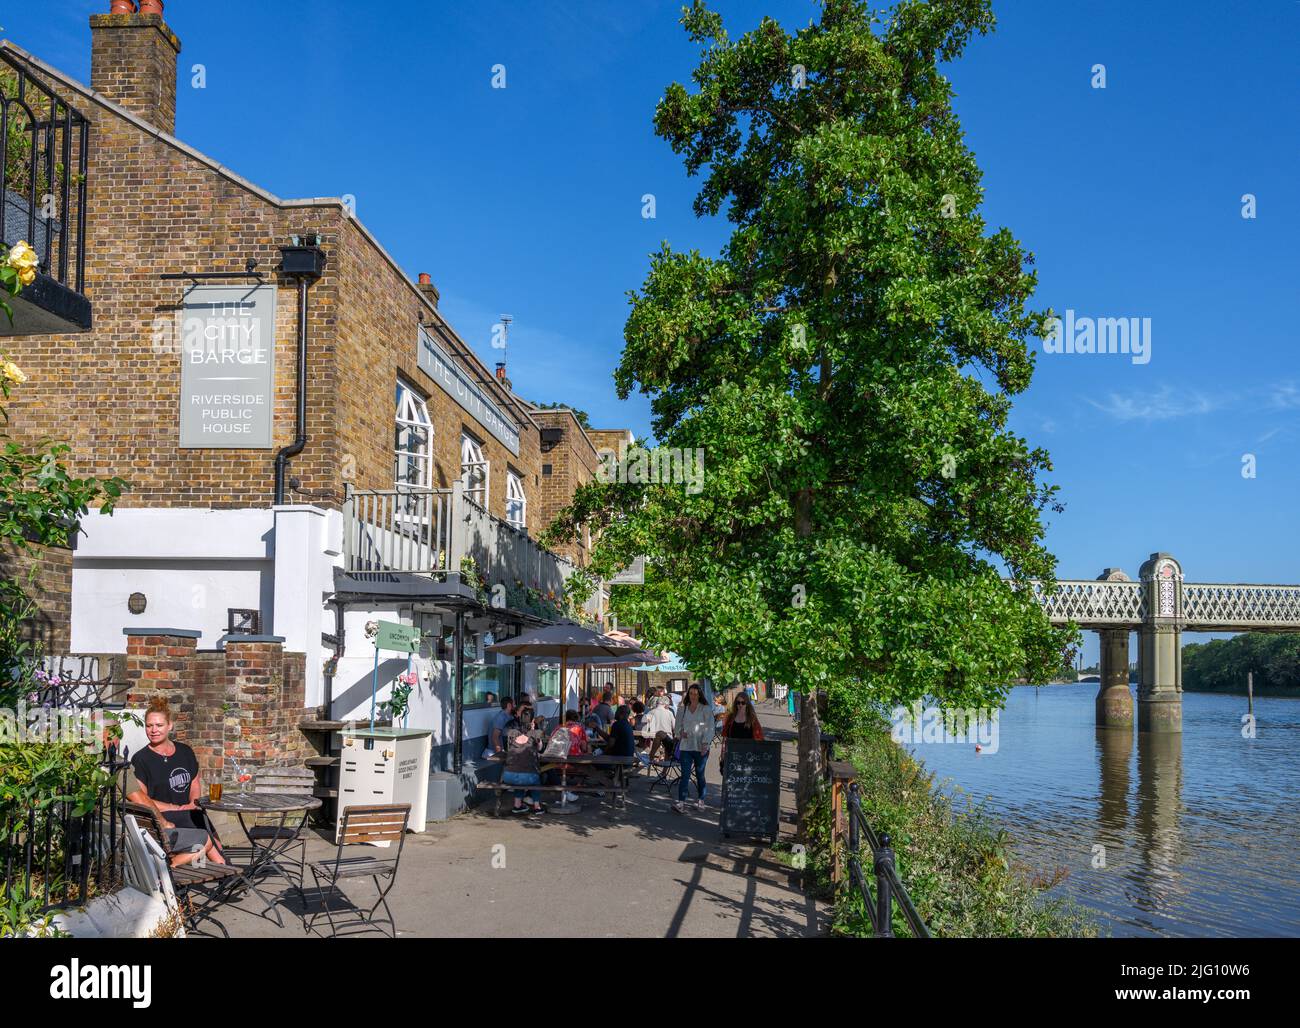 Le pub City Barge sur la Tamise à Chiswick, Londres, Angleterre, Royaume-Uni Banque D'Images